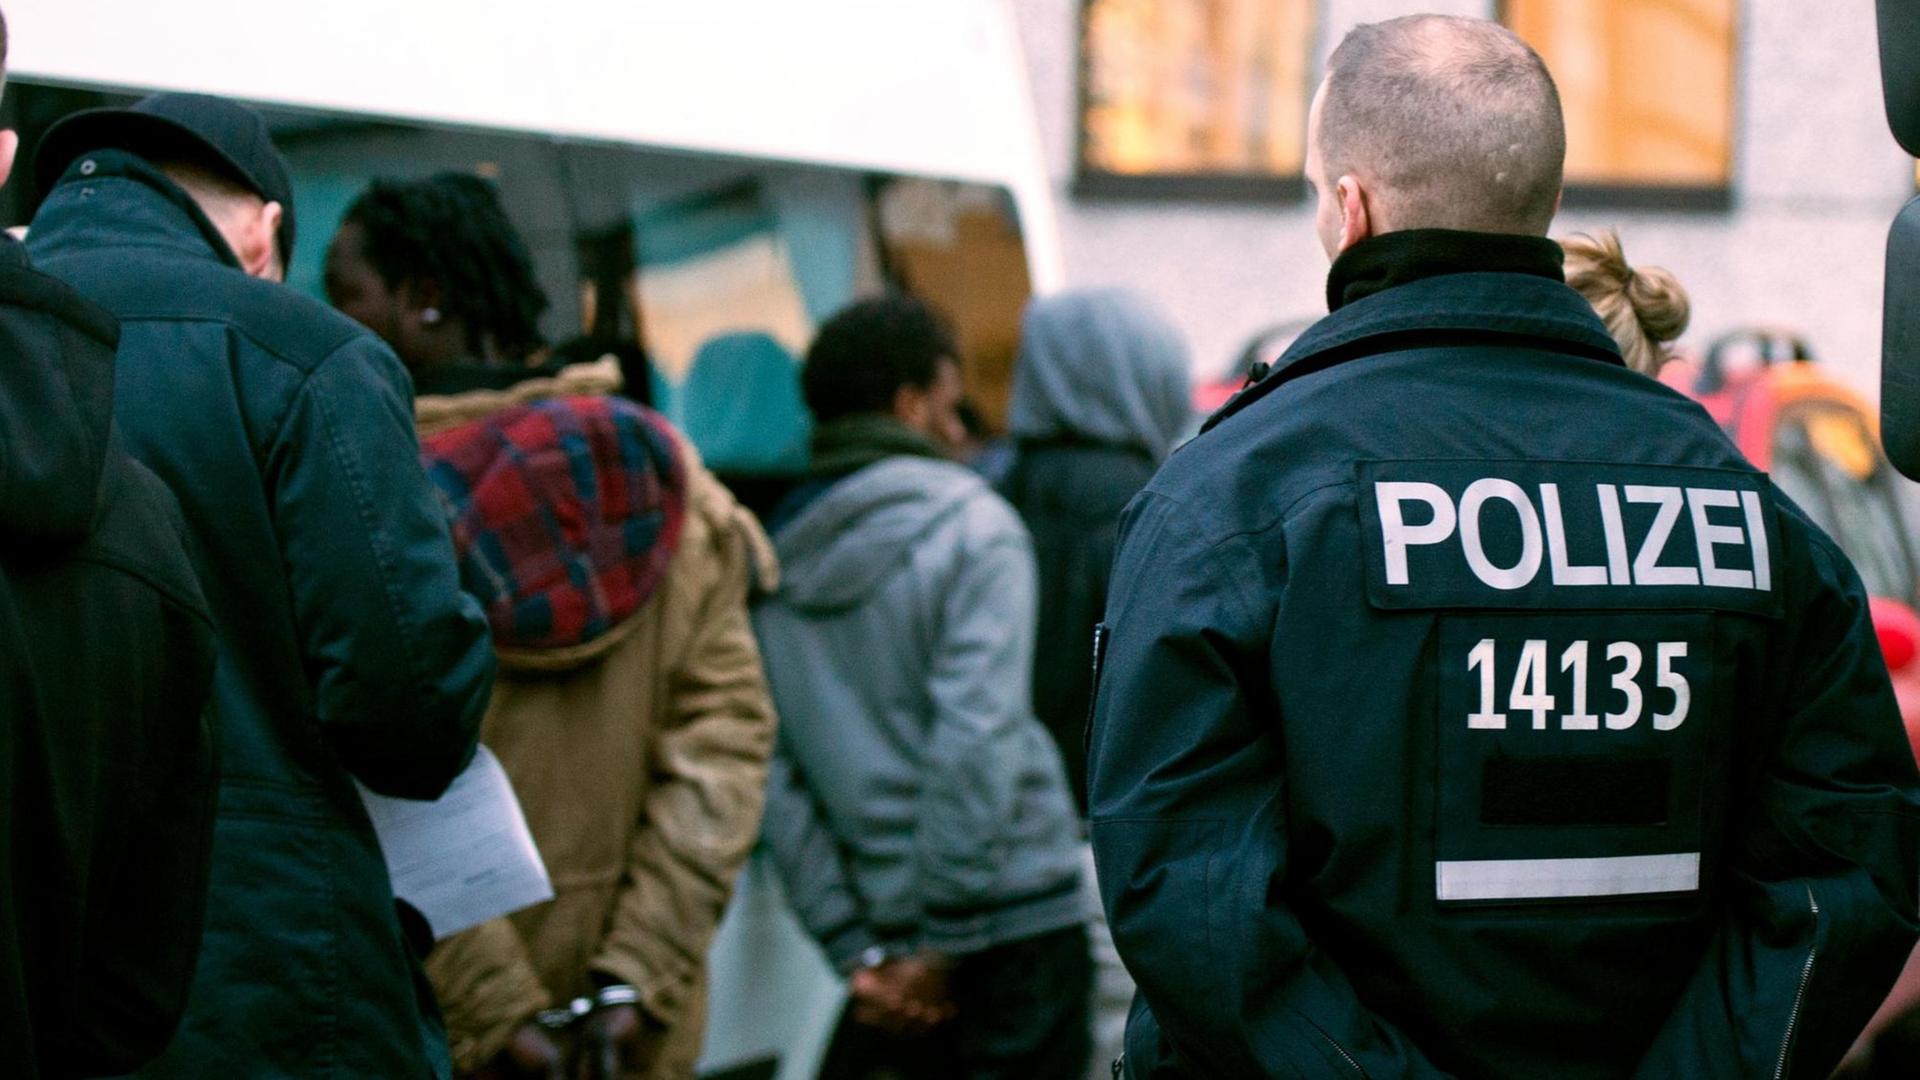 Polizisten führen nach einer Razzia im Görlitzer Park in Berlin im Bezirk Kreuzberg vorläufig festgenommene, mutmaßliche Drogenhändler in Handschellen ab, aufgenommen 2014